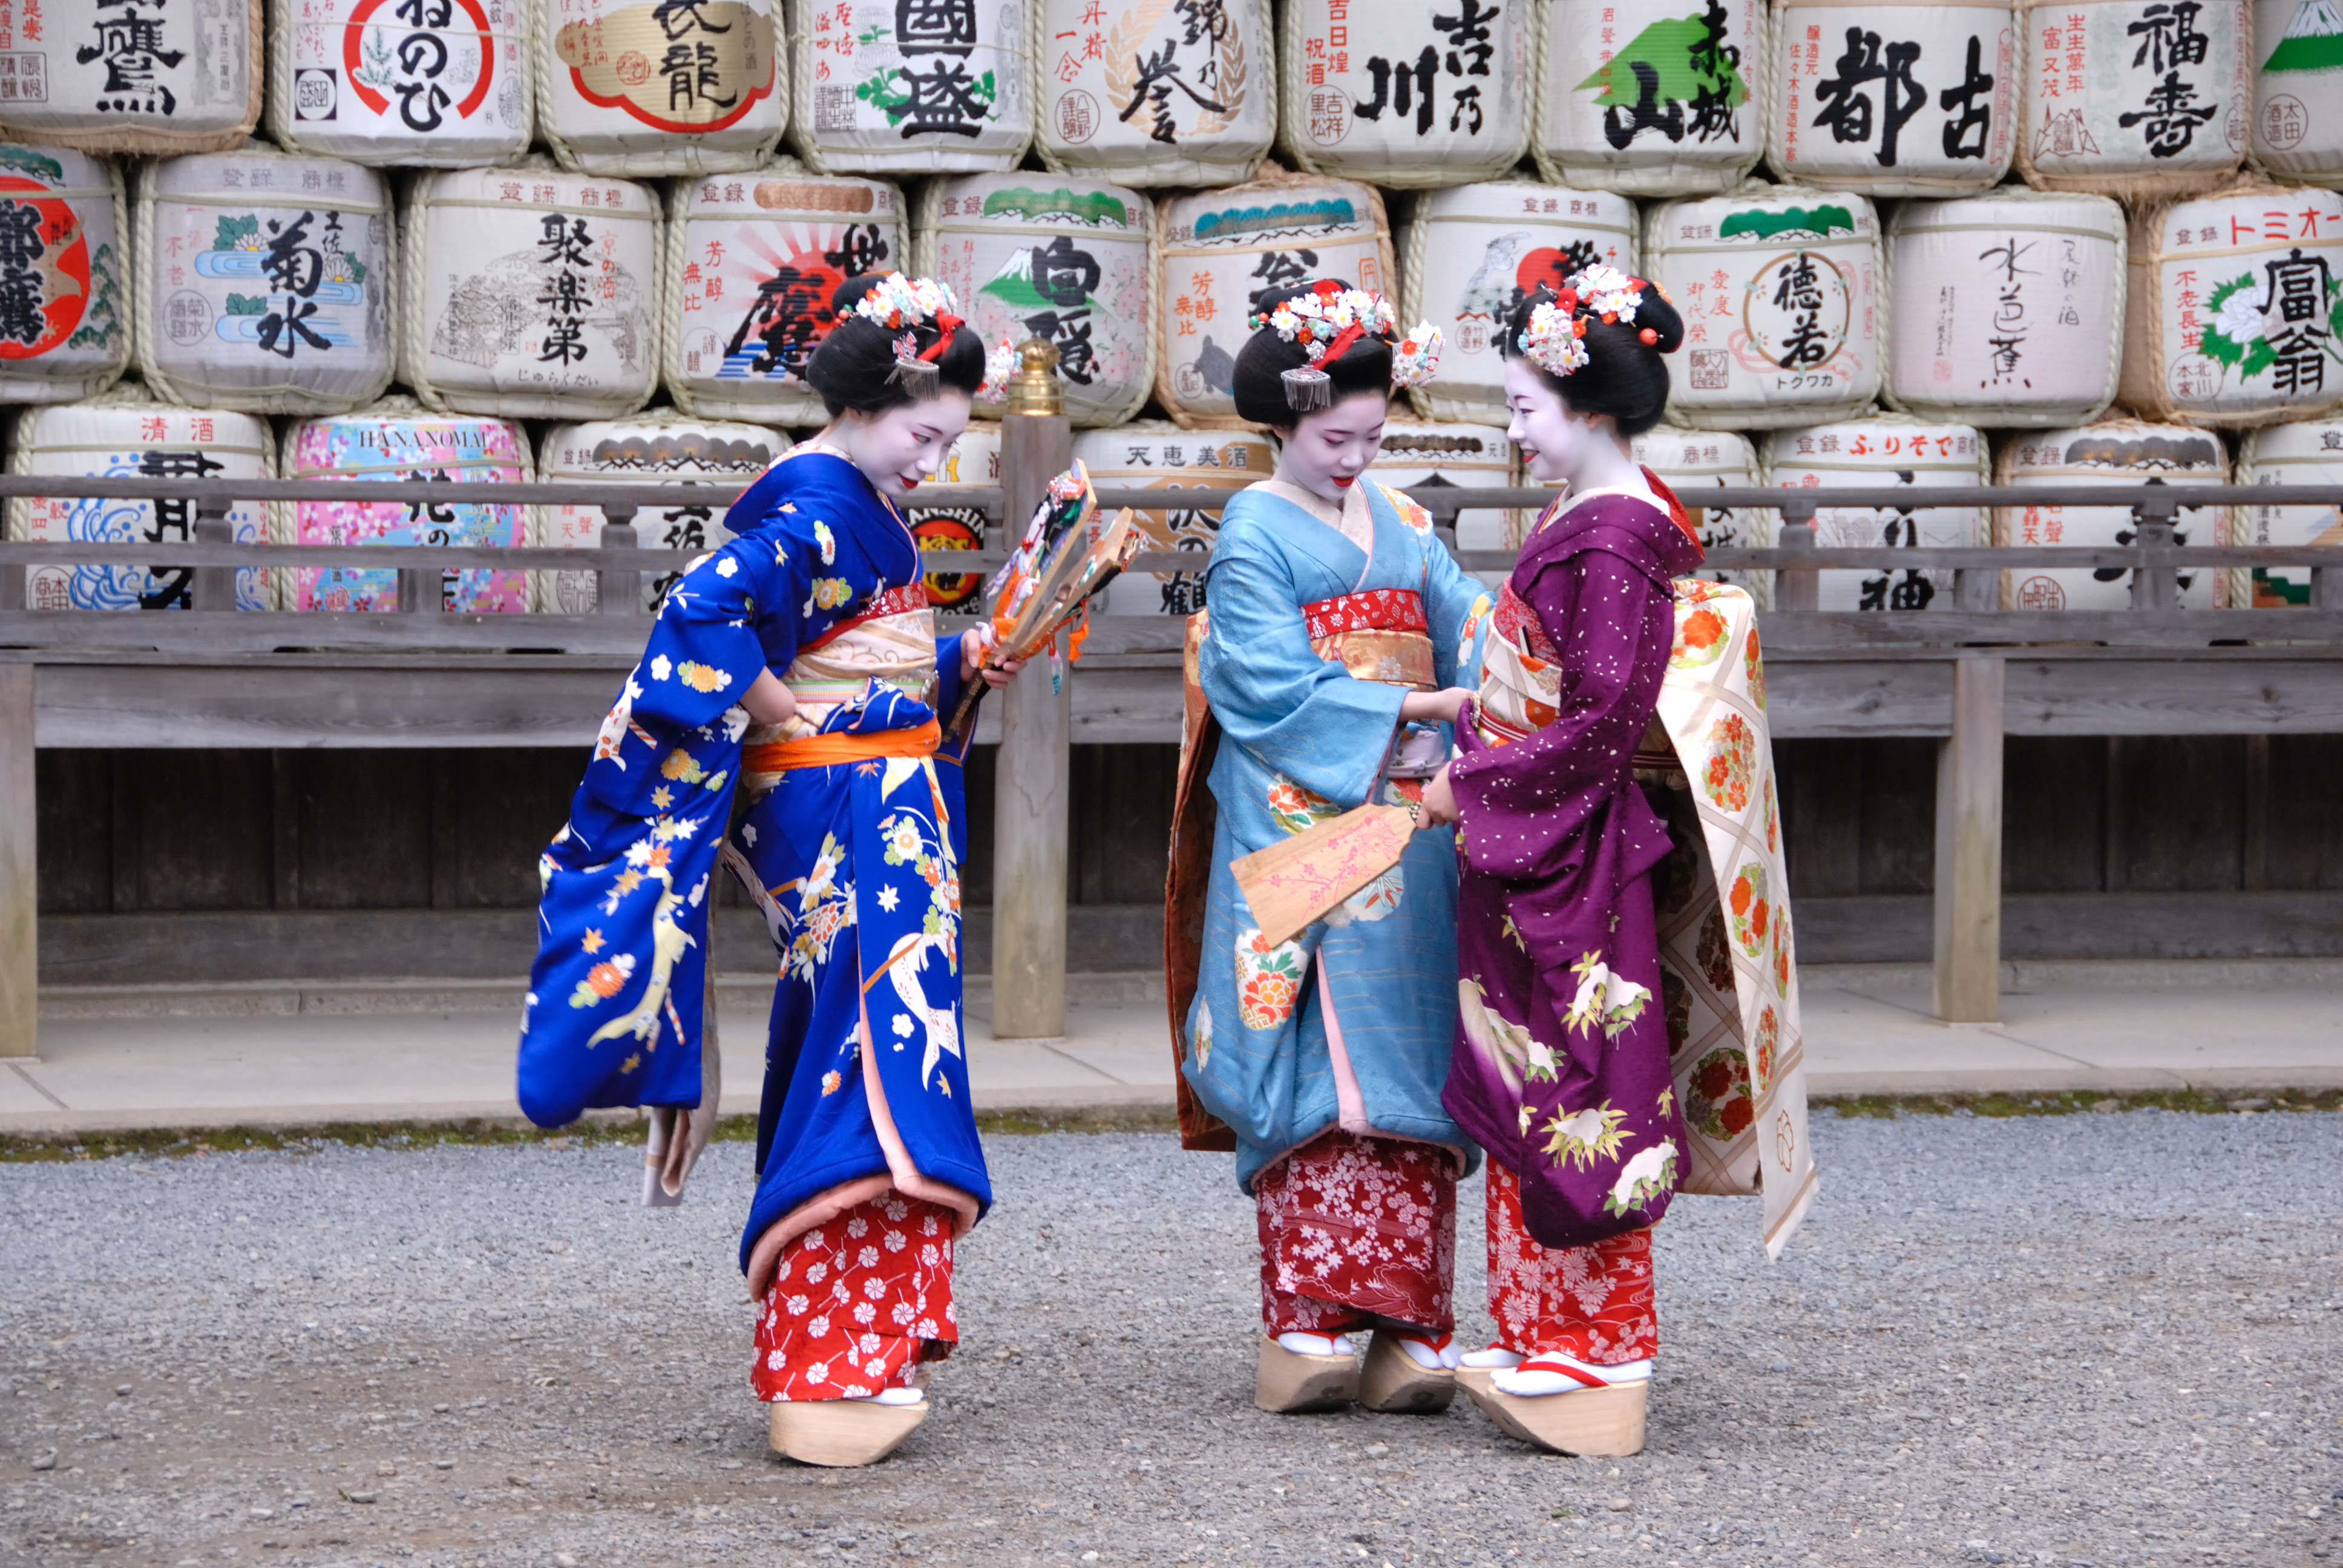 Resultado de imagem para distrito geisha de gion kyoto